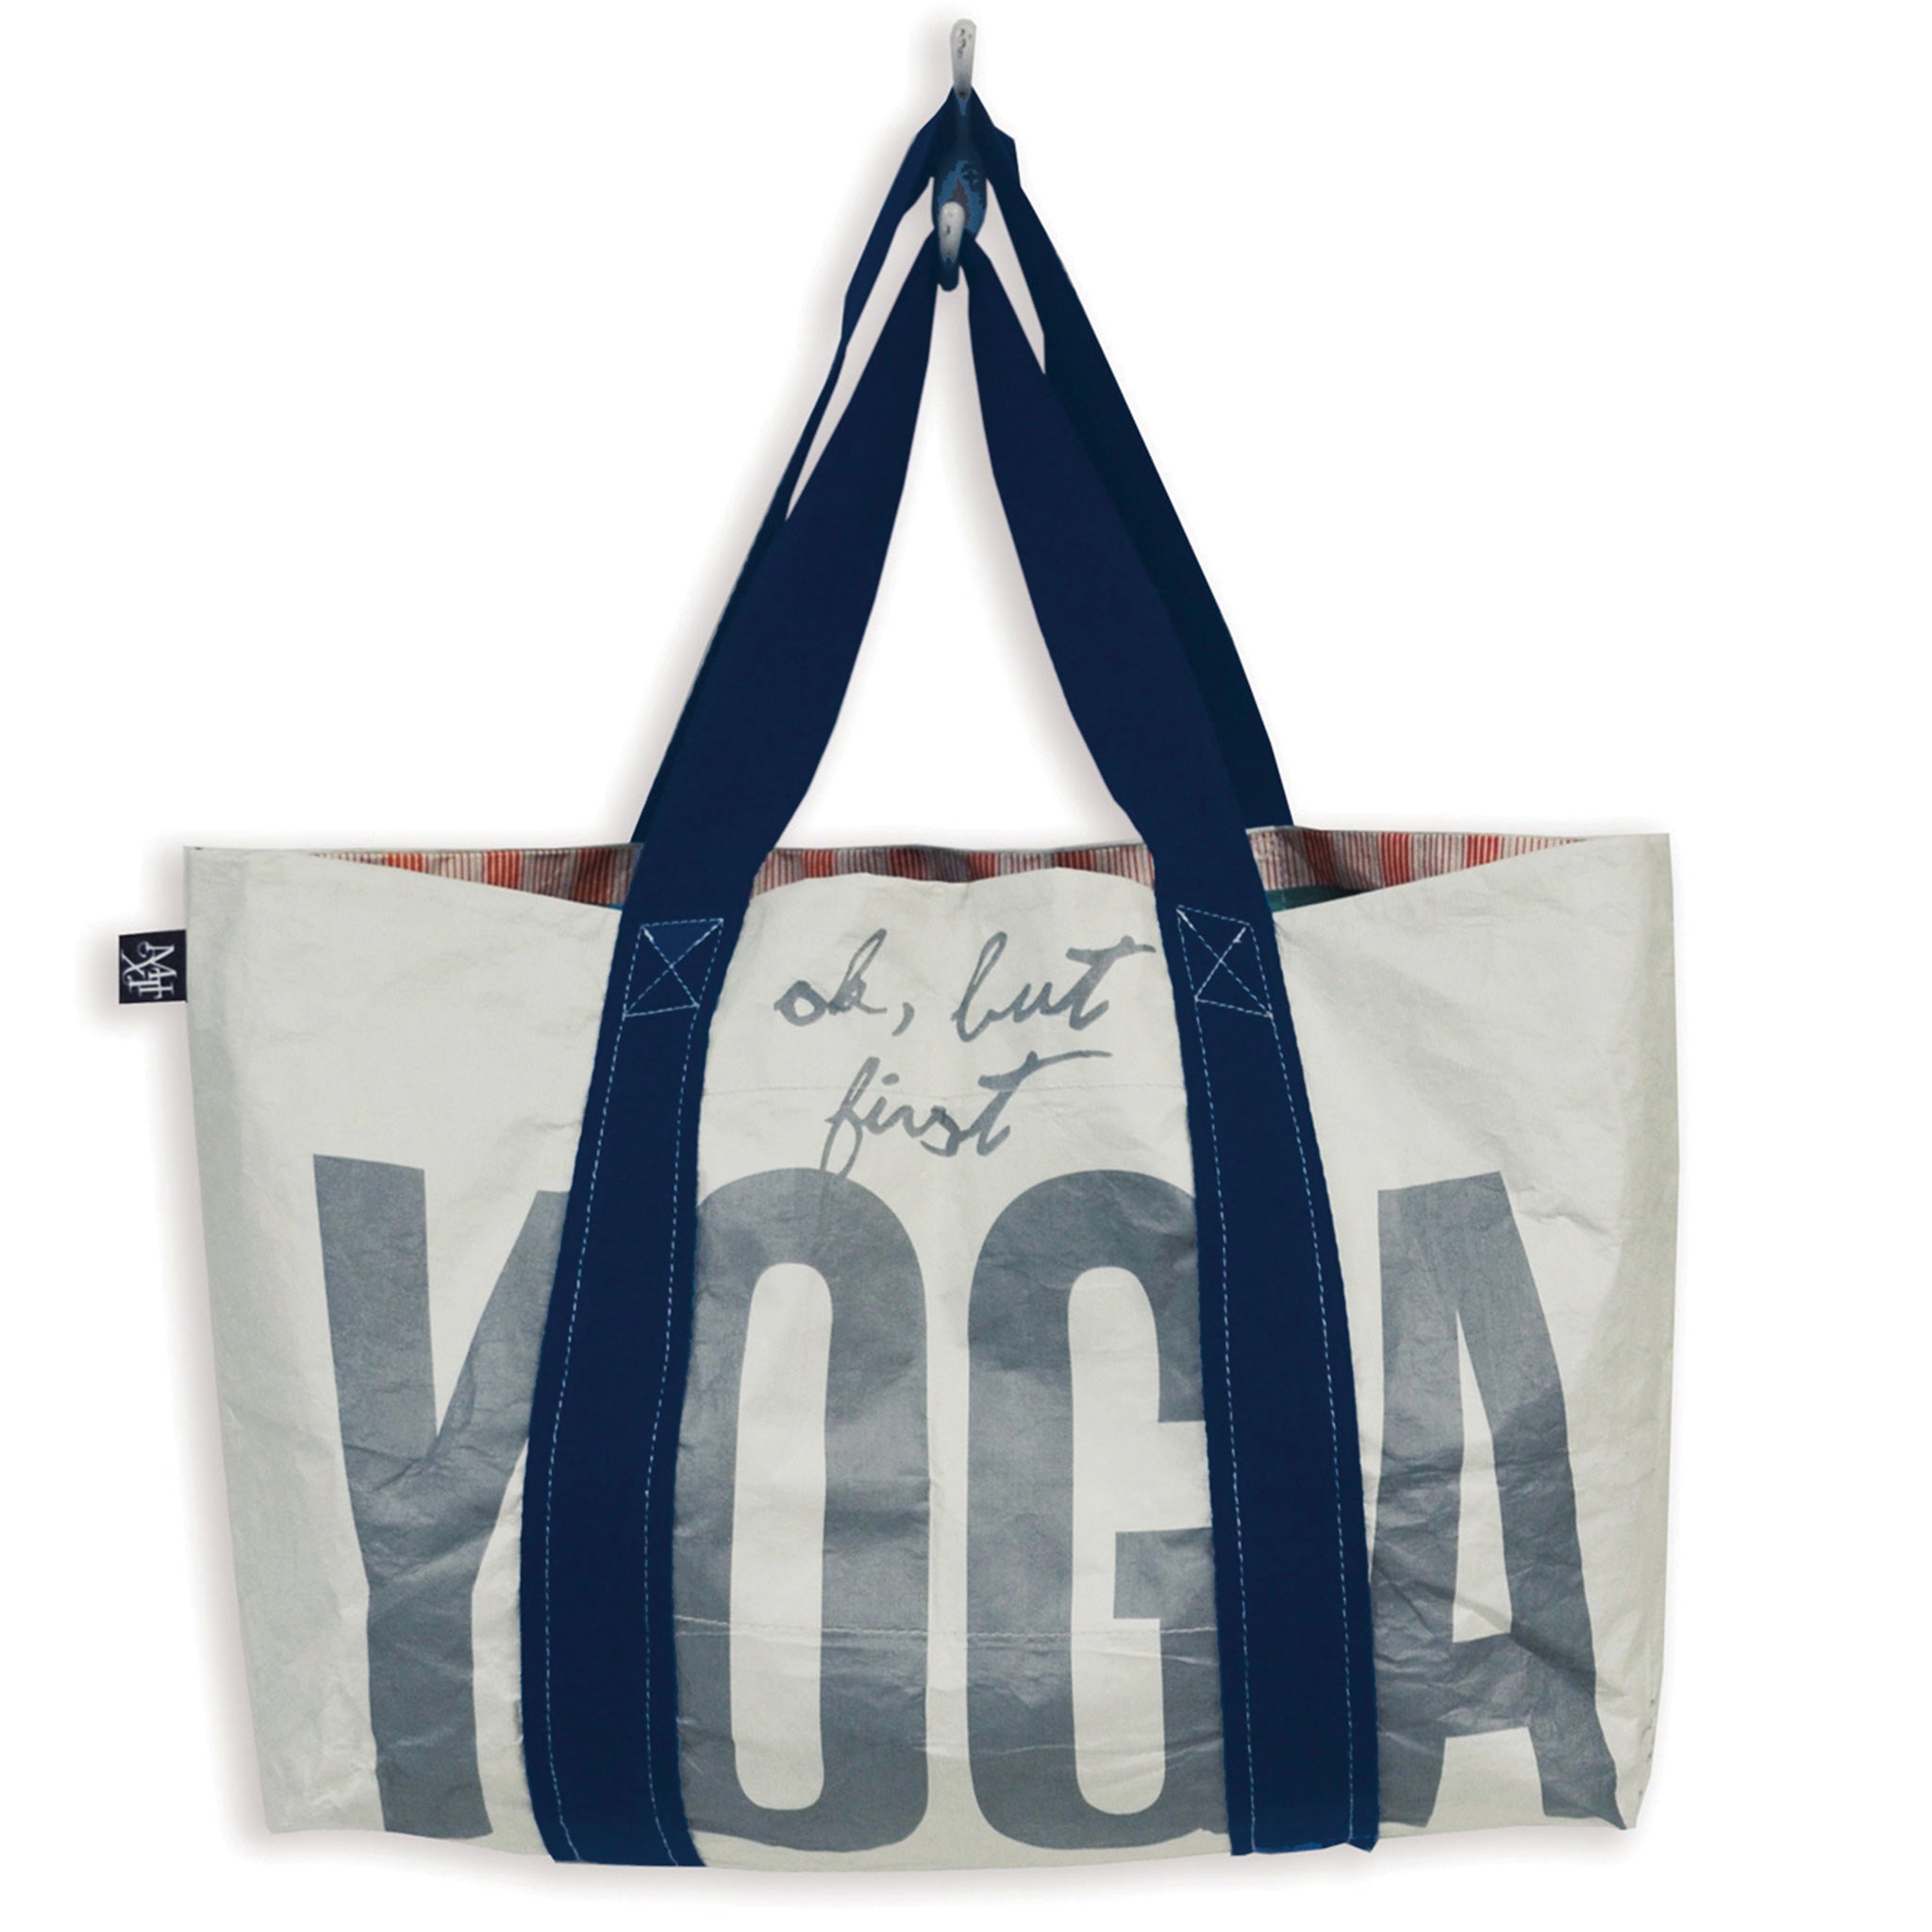 yoga tote bag